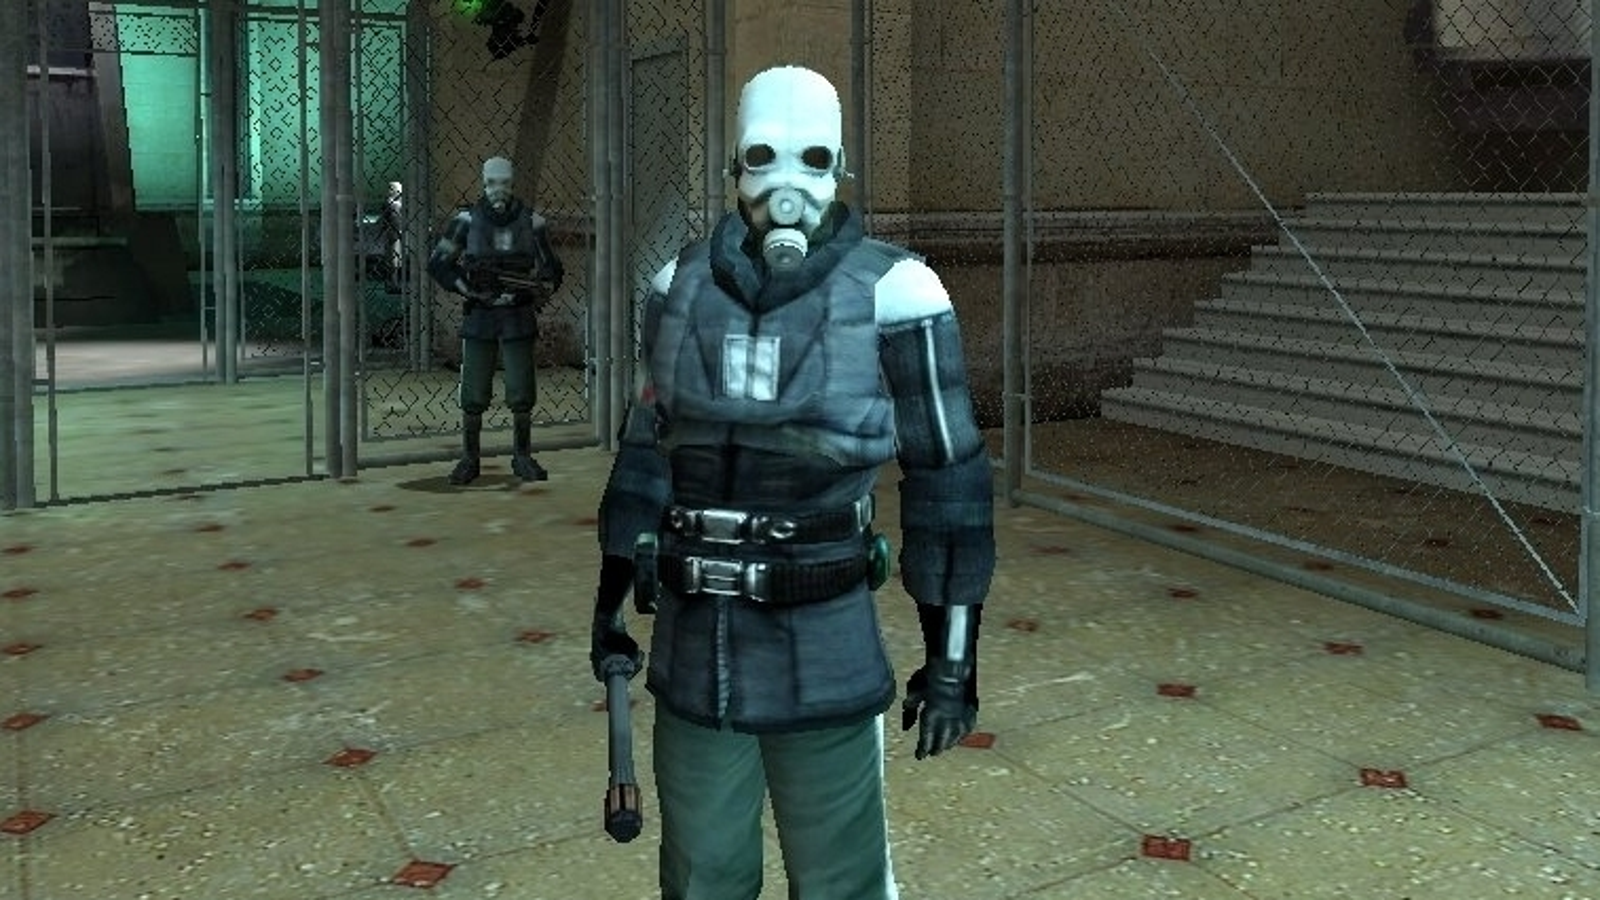 Half-Life 2 on Steam